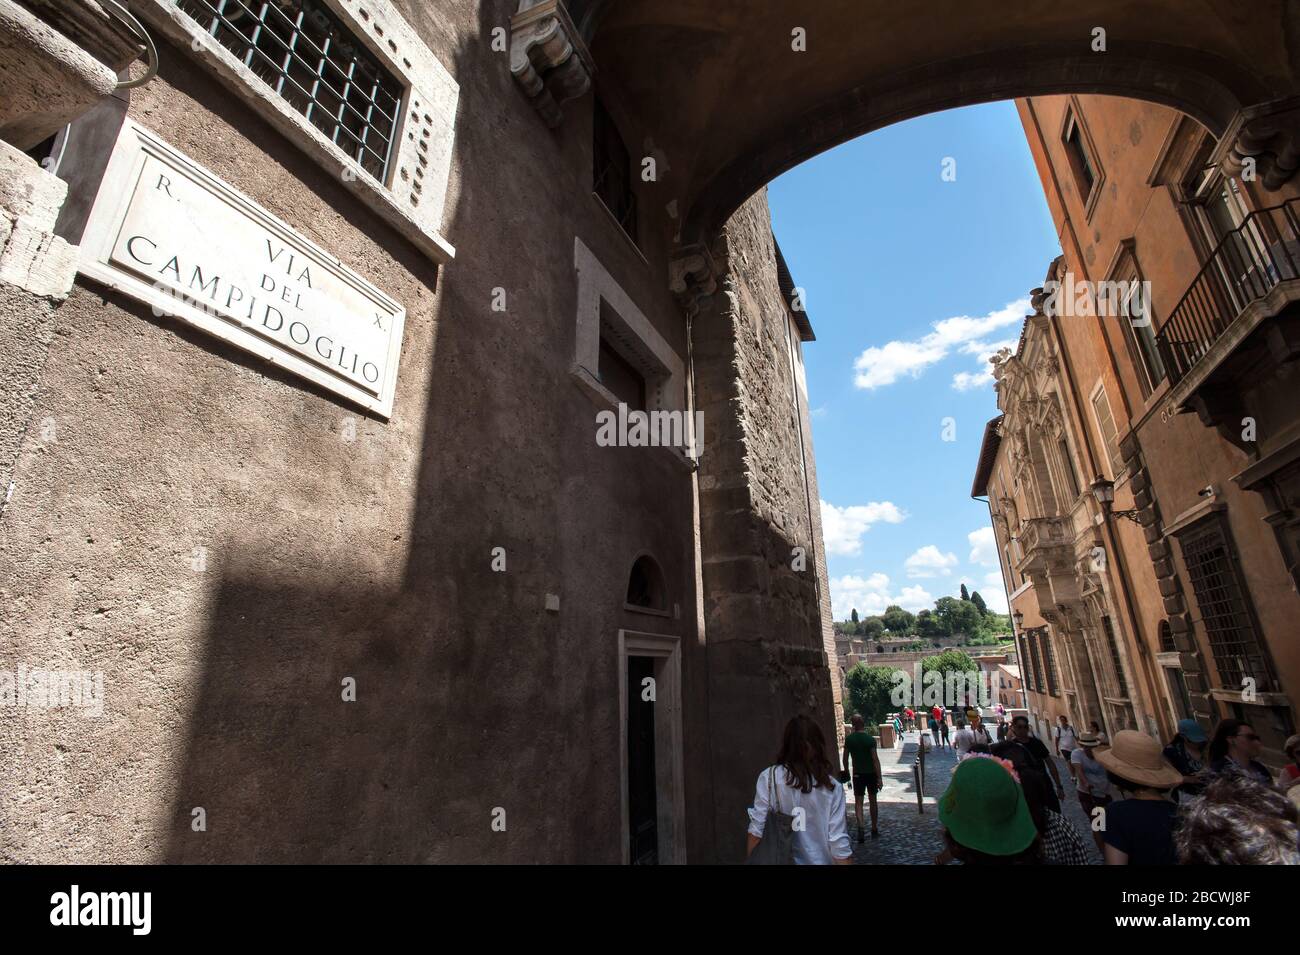 ROME, ITALY - 29 JUNE, 2017 - Tourists walk along the Via Del Campidoglio on the Capitoline hill, Rome. Stock Photo